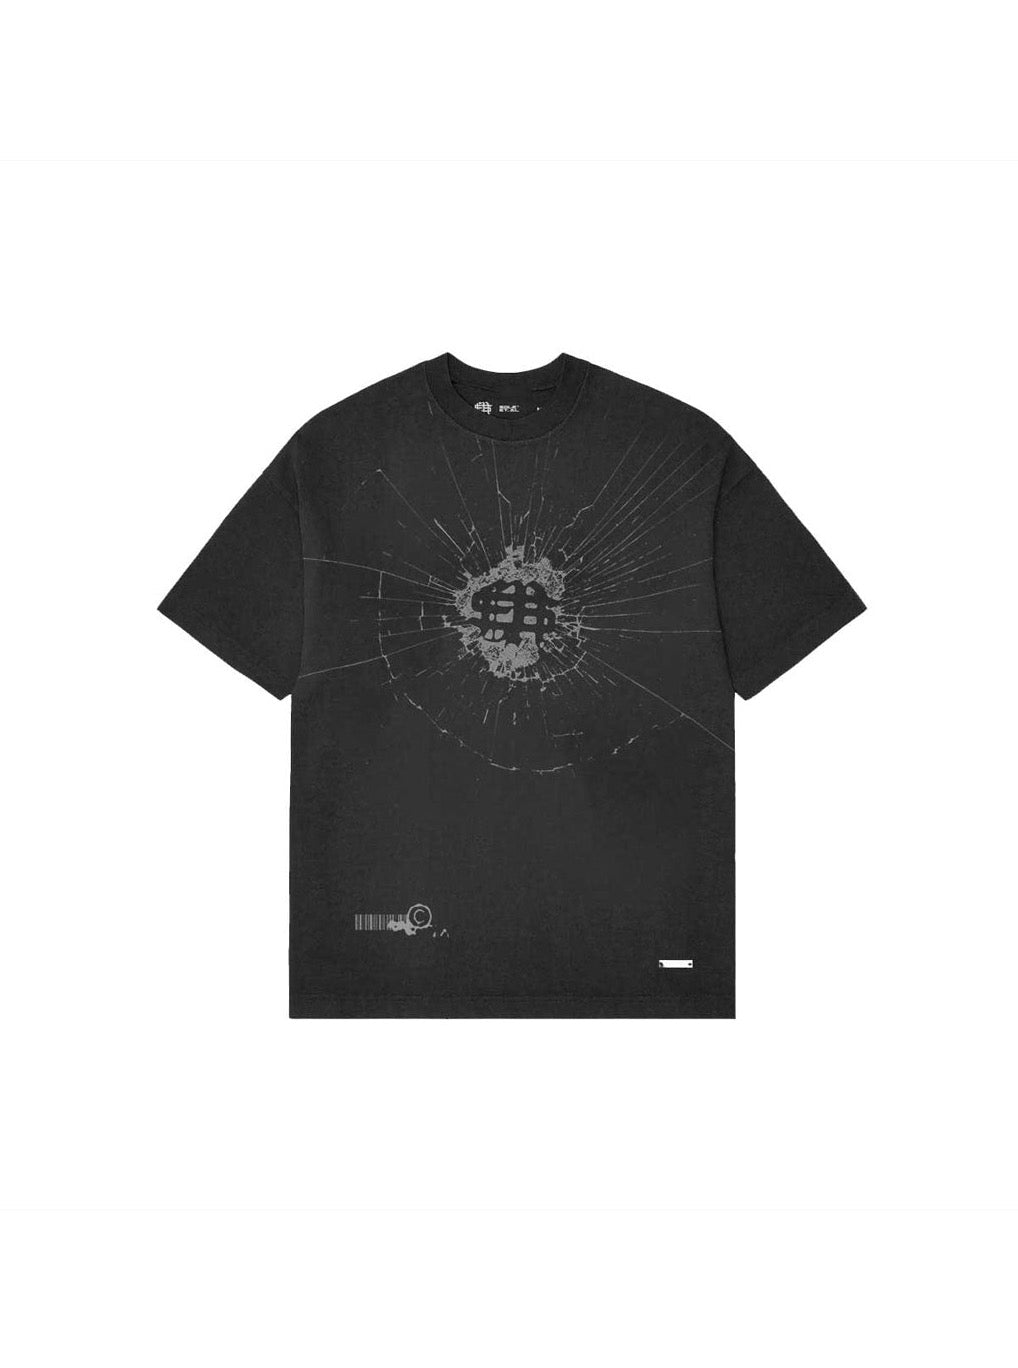 ソール et.アル・フラグメント Tシャツ : ブラック / グレー